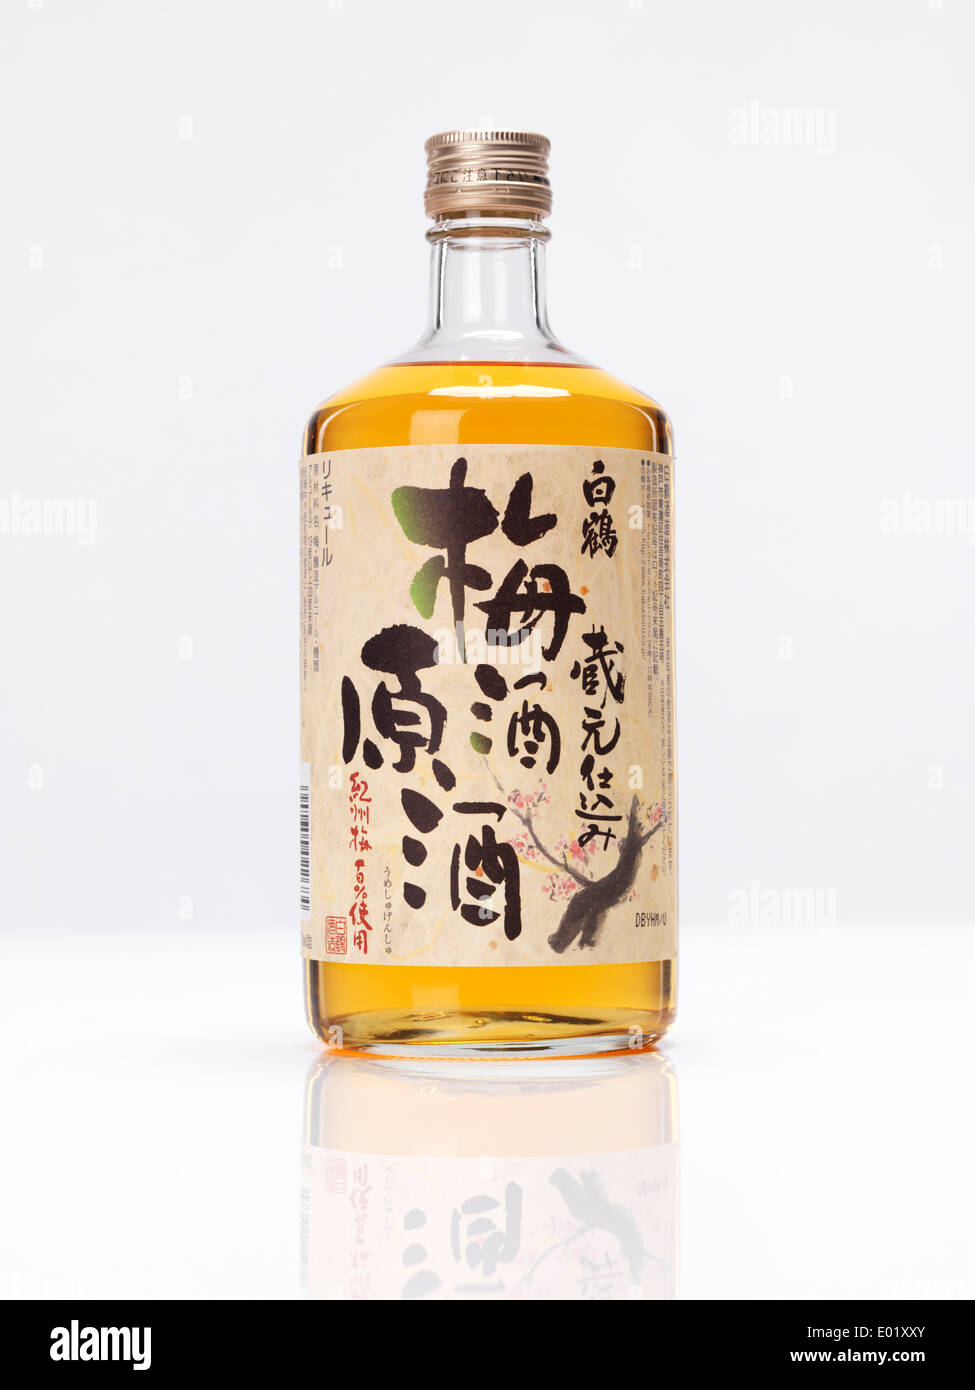 Bouteille de White Crane japonais premium vin de prune Umeshu bien isolé sur fond blanc Banque D'Images